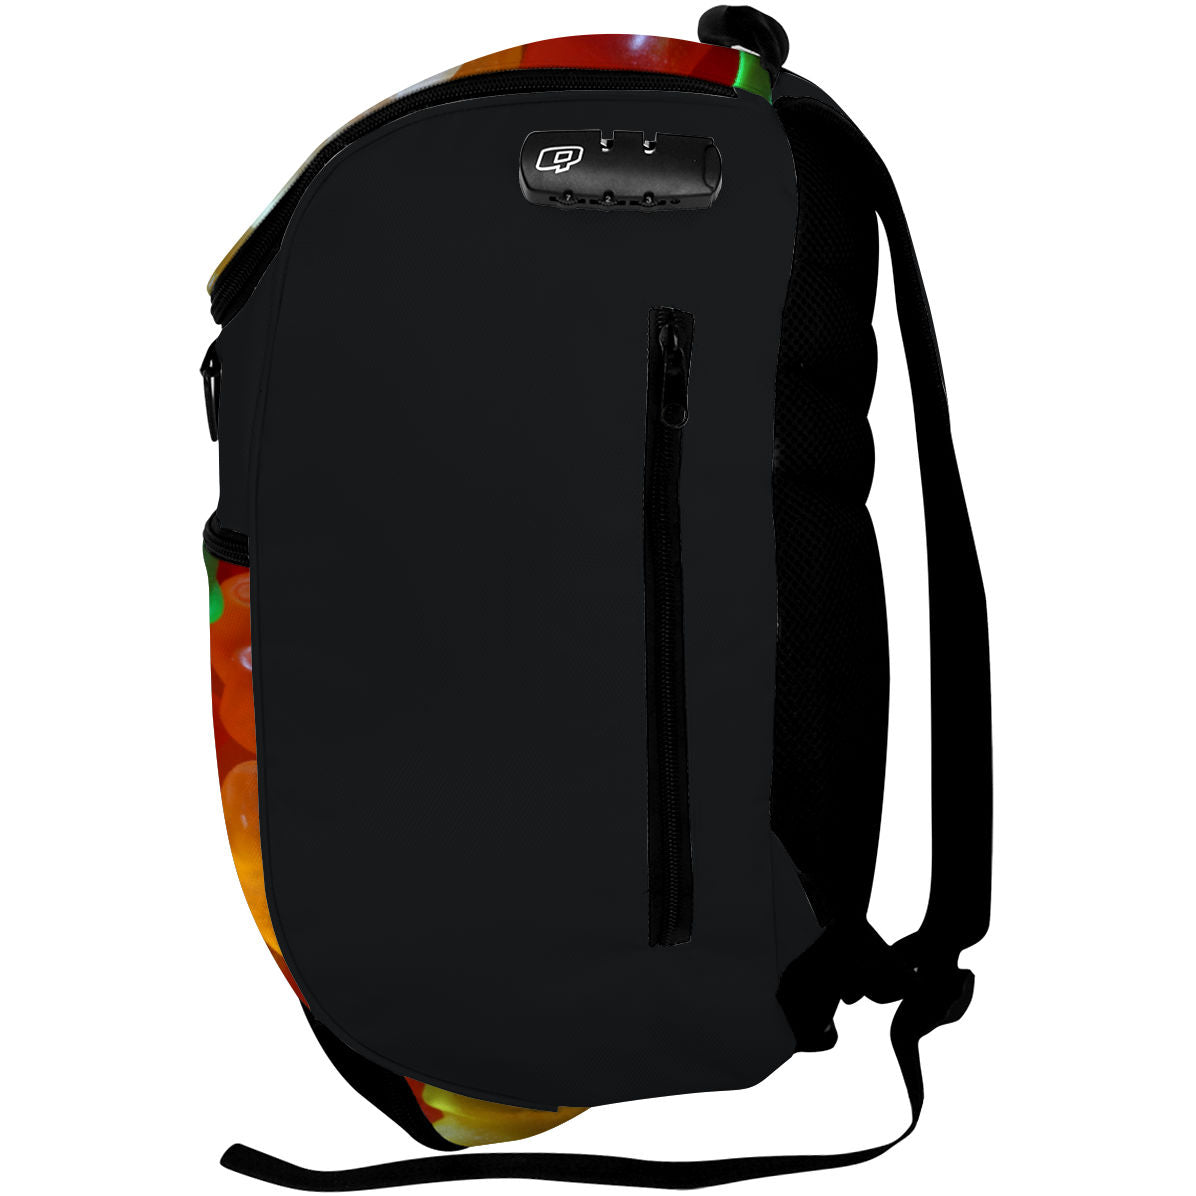 11/20/2021 - Backpack